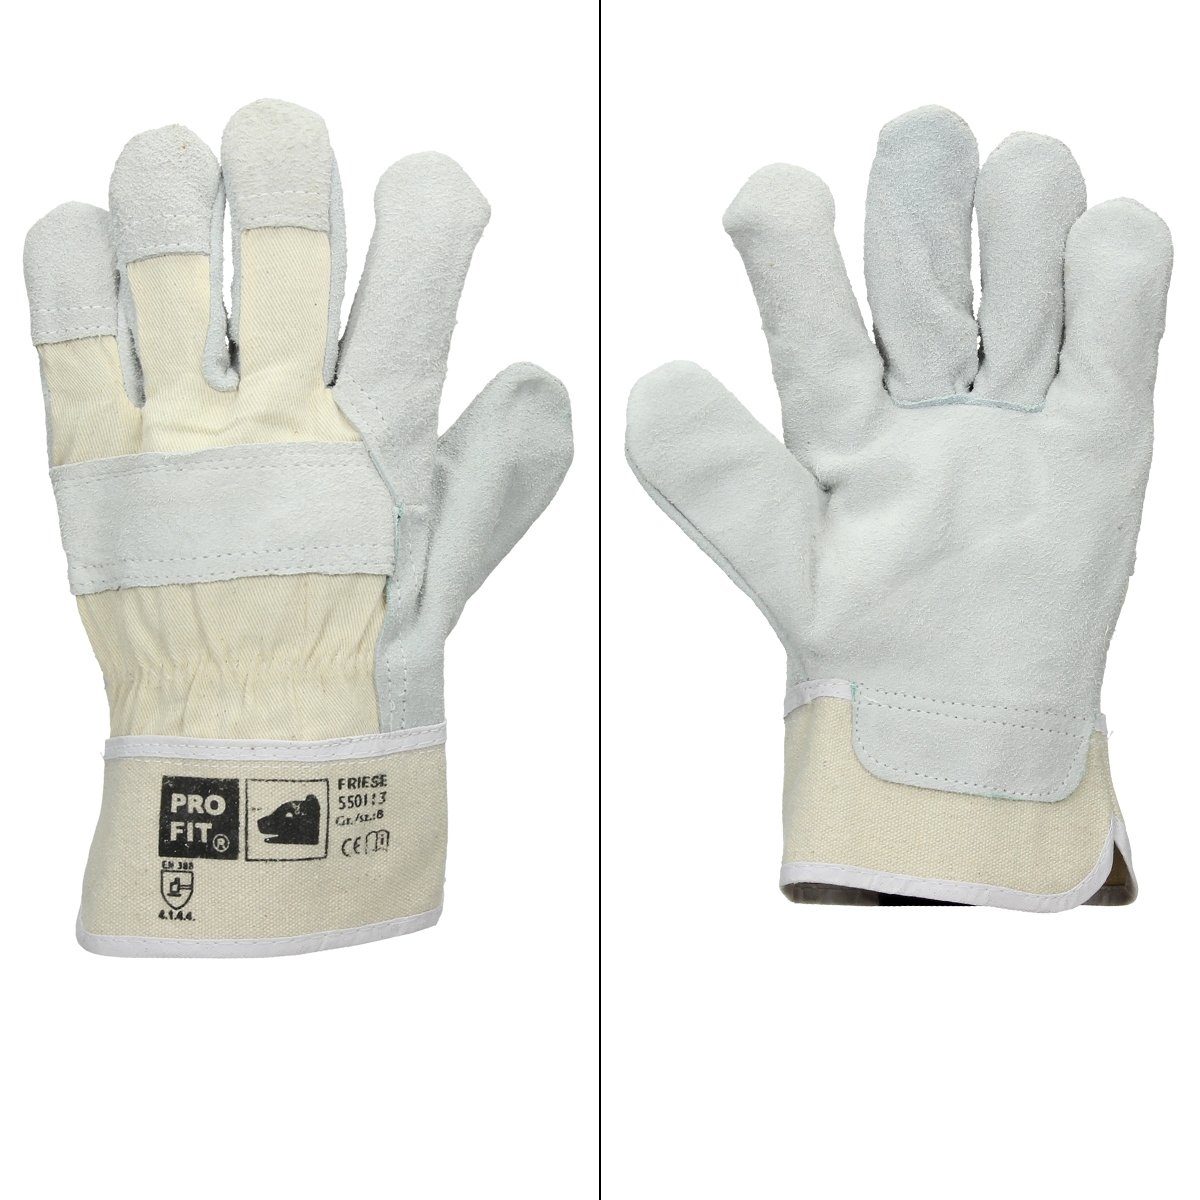 ECD Germany Arbeitshandschuh-Set Rindspaltleder-Handschuhe Schutzhandschuhe Gartenhandschuhe Handschuhe 48 Paar Pro-Fit® Größe 8/M Natur Canvas-Stulpe Leder Rindspalt